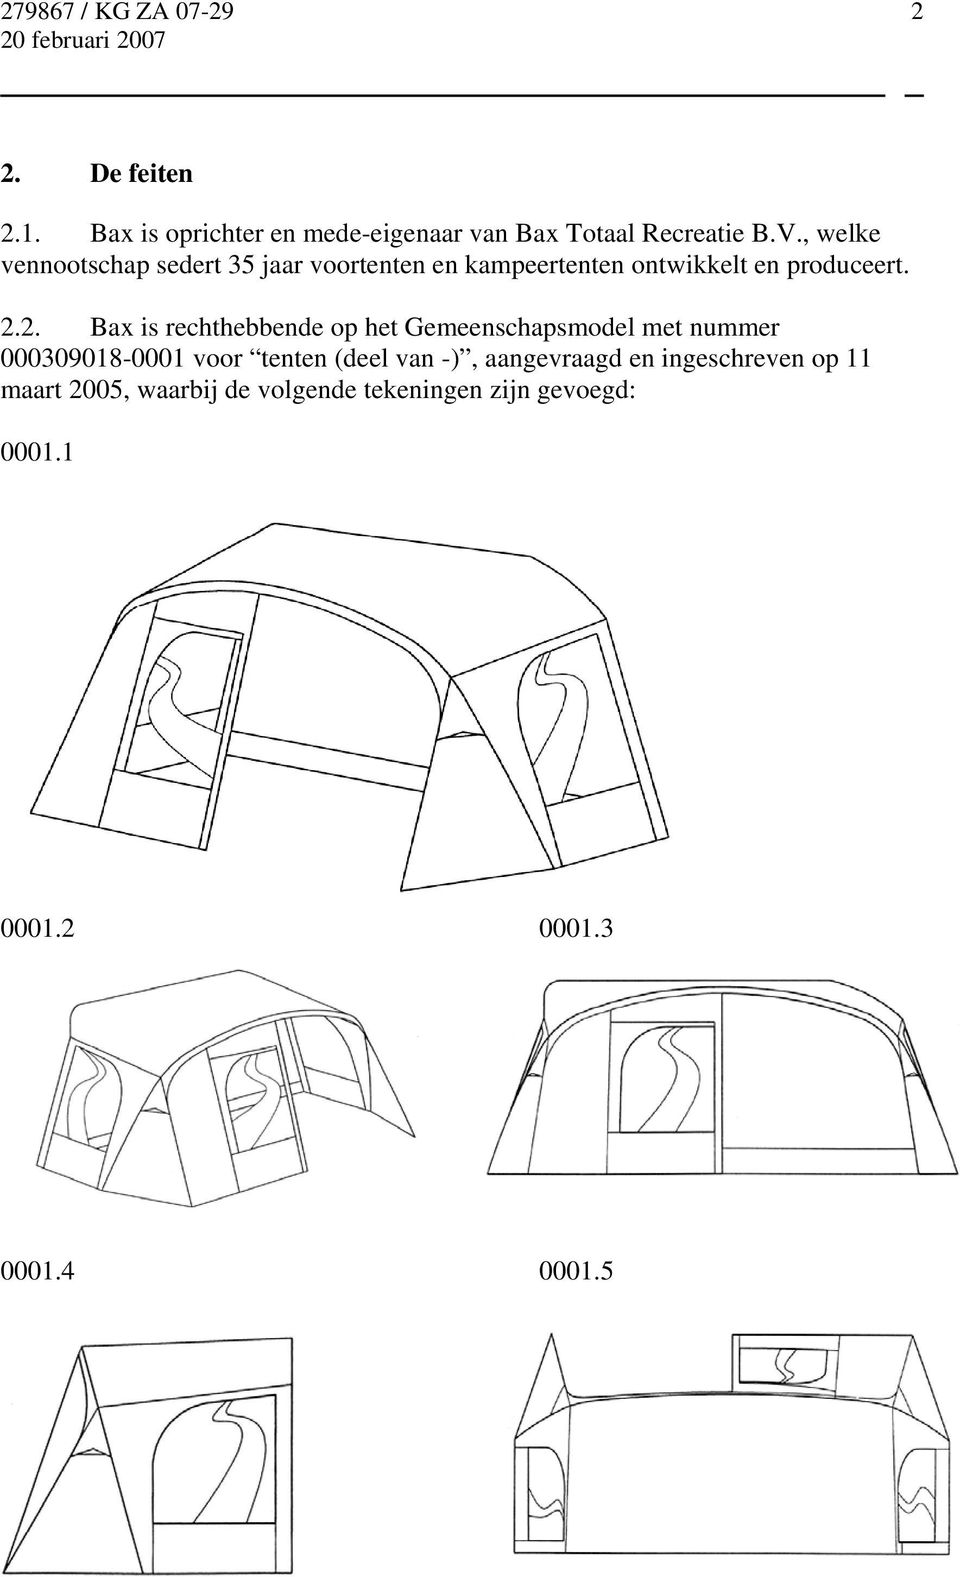 2. Bax is rechthebbende op het Gemeenschapsmodel met nummer 000309018-0001 voor tenten (deel van -),